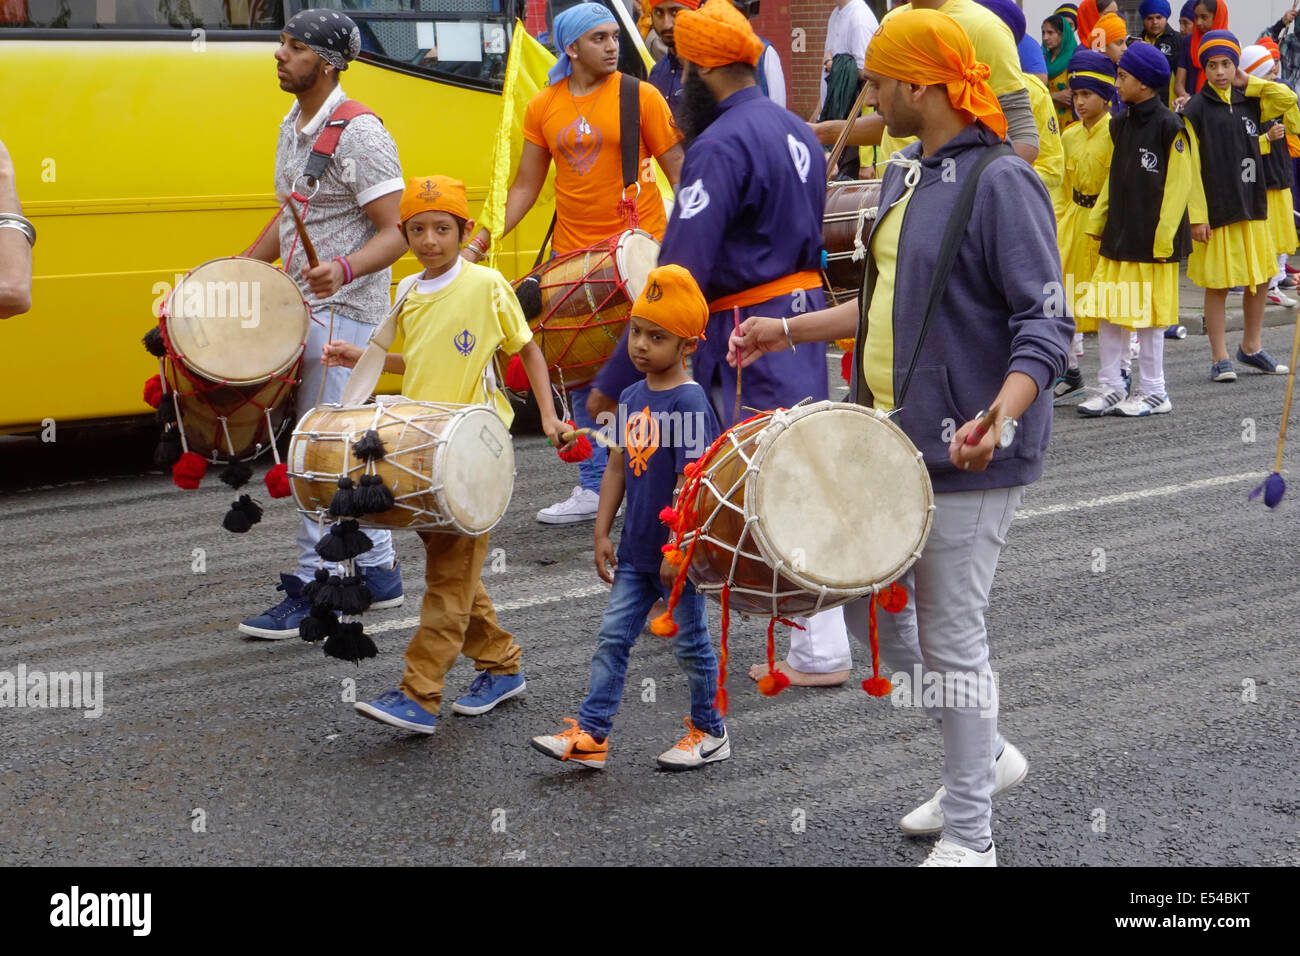 Middlesbrough, Regno Unito. Il 20 luglio, 2014. L annuale Nagar Kirtan Parade celebra la cultura Sikh nel nord-est dell' Inghilterra ha avuto luogo in Middlesbrough Cleveland UK oggi è domenica 20 luglio. Il corteo è guidato da cinque zafferano derubato gli uomini che portano un galleggiante che porta il Guru Granth Sahib i sikh la Sacra Scrittura. Membri della processione è a piedi nudi in ossequio alla scrittura così visualizzato. Essi sono preceduti da spazzatrici pulizia della strada. Questa immagine mostra la religione Sikh ragazzi marciando e suonando la batteria in parata Credito: Pietro Giordano NE/Alamy Live News Foto Stock